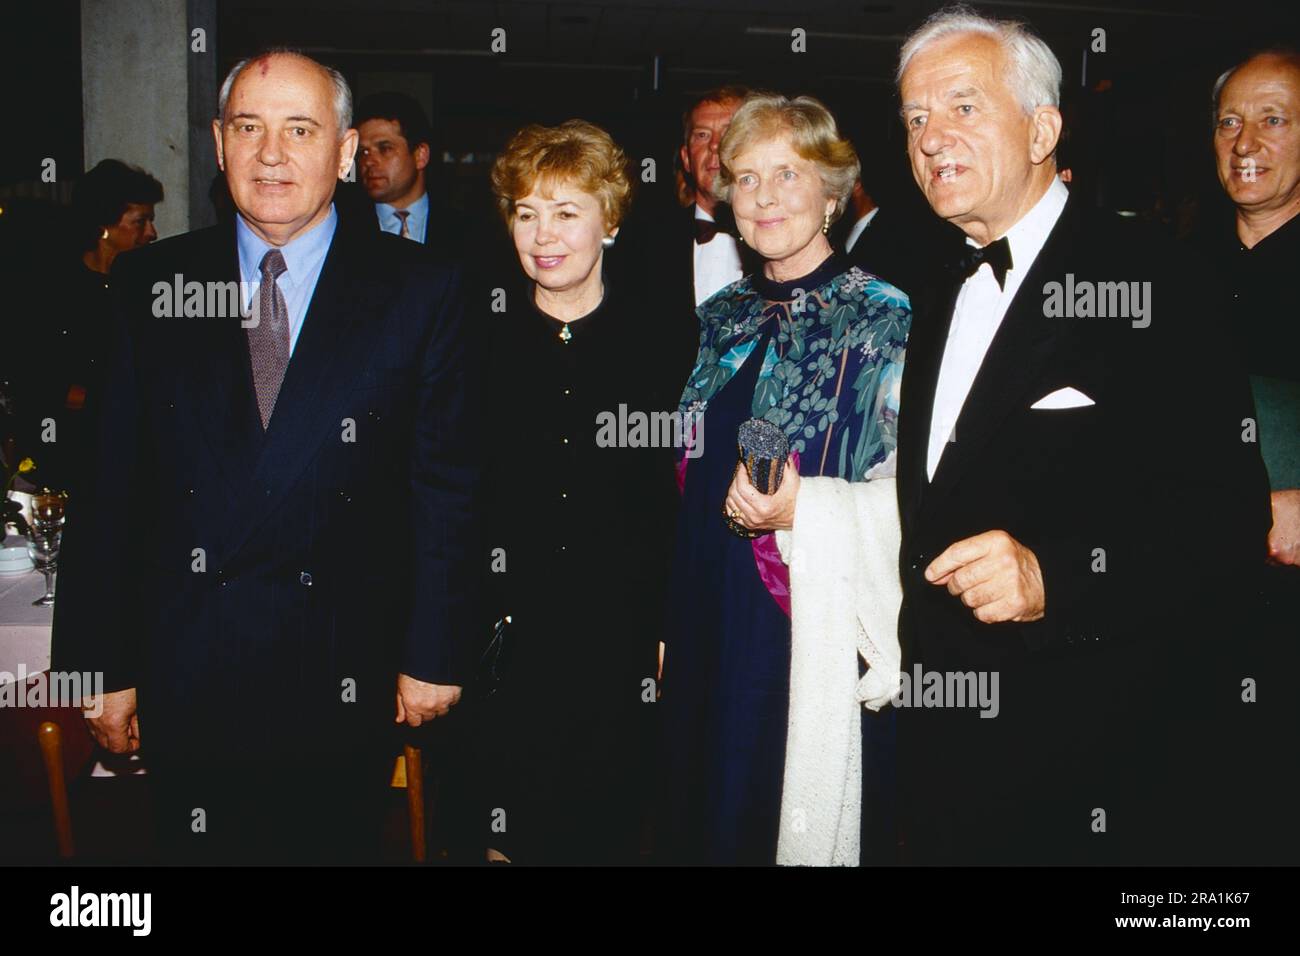 Der sowjetische Staats- und Parteichef Michail Gorbatschow und seine Frau Raisa beim Besuch in Bonn mit Bundespräsident Richard von Weizsäcker und Ehefrau Marianne, 1989. Stock Photo